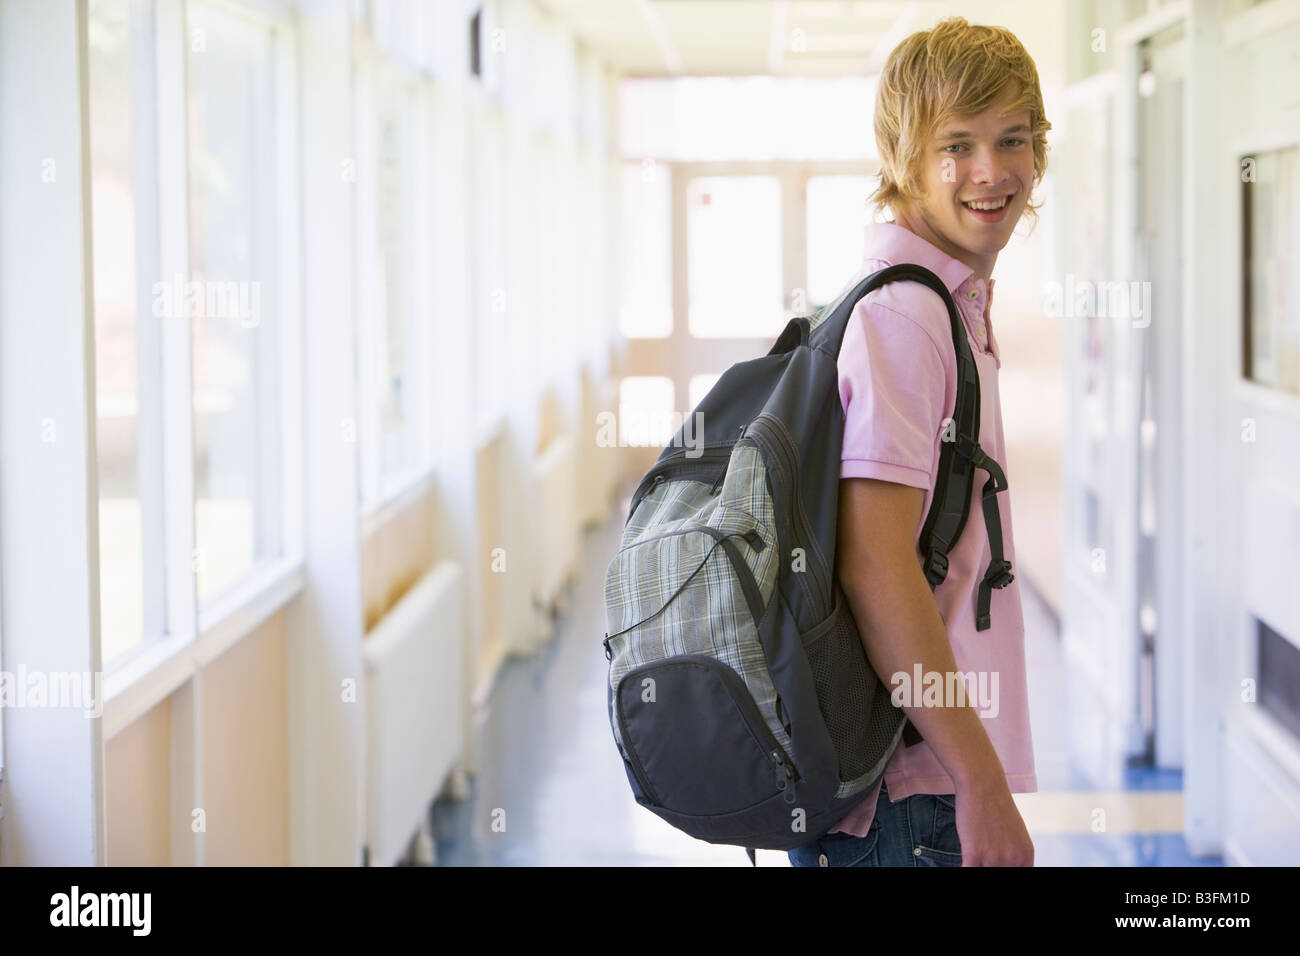 Student standing in corridor (selective focus) Stock Photo